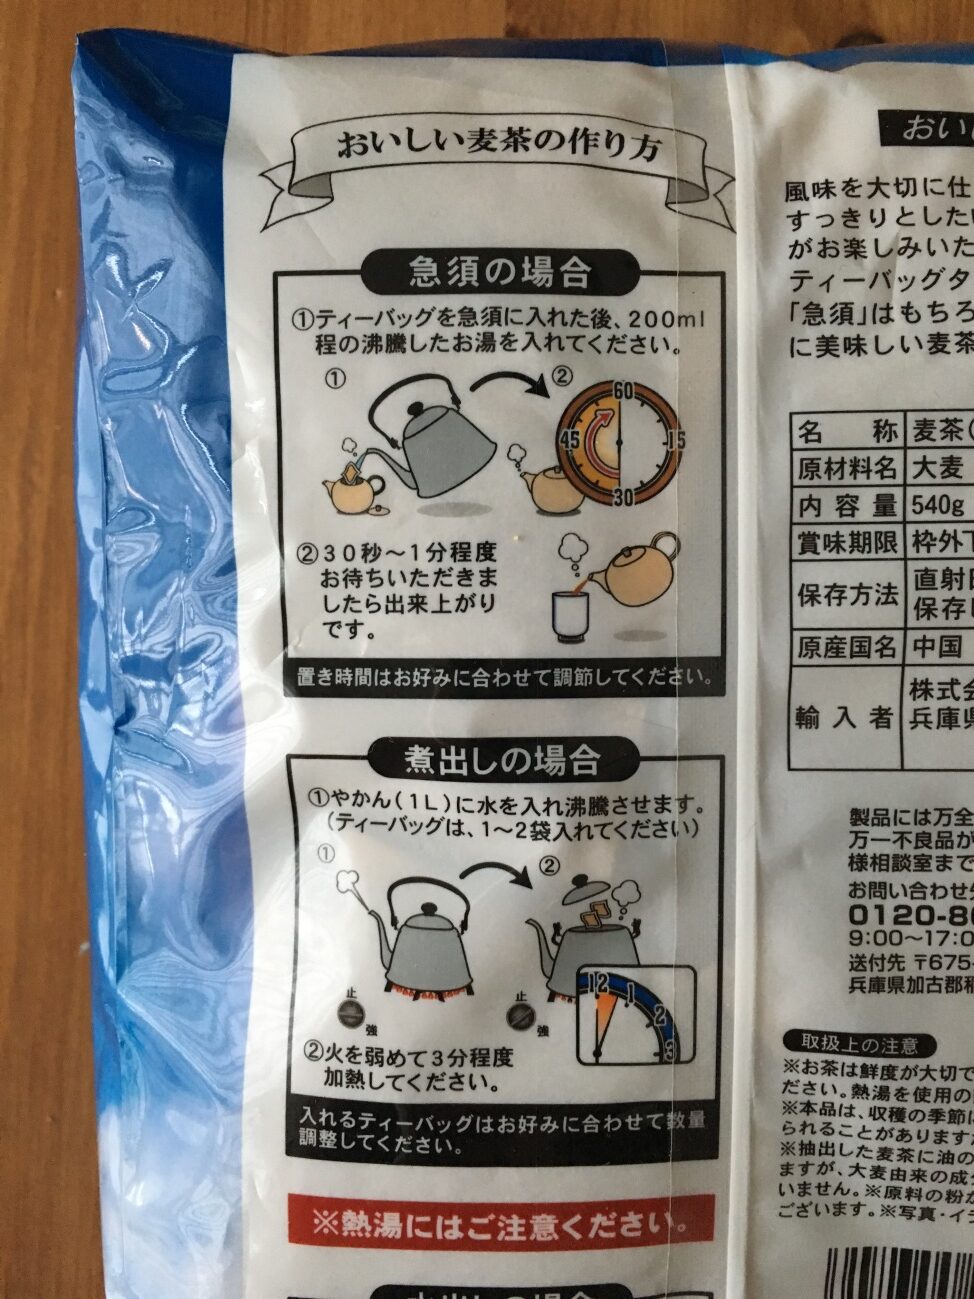 業務スーパーの麦茶のパッケージに記載されているおいしい麦茶の作り方